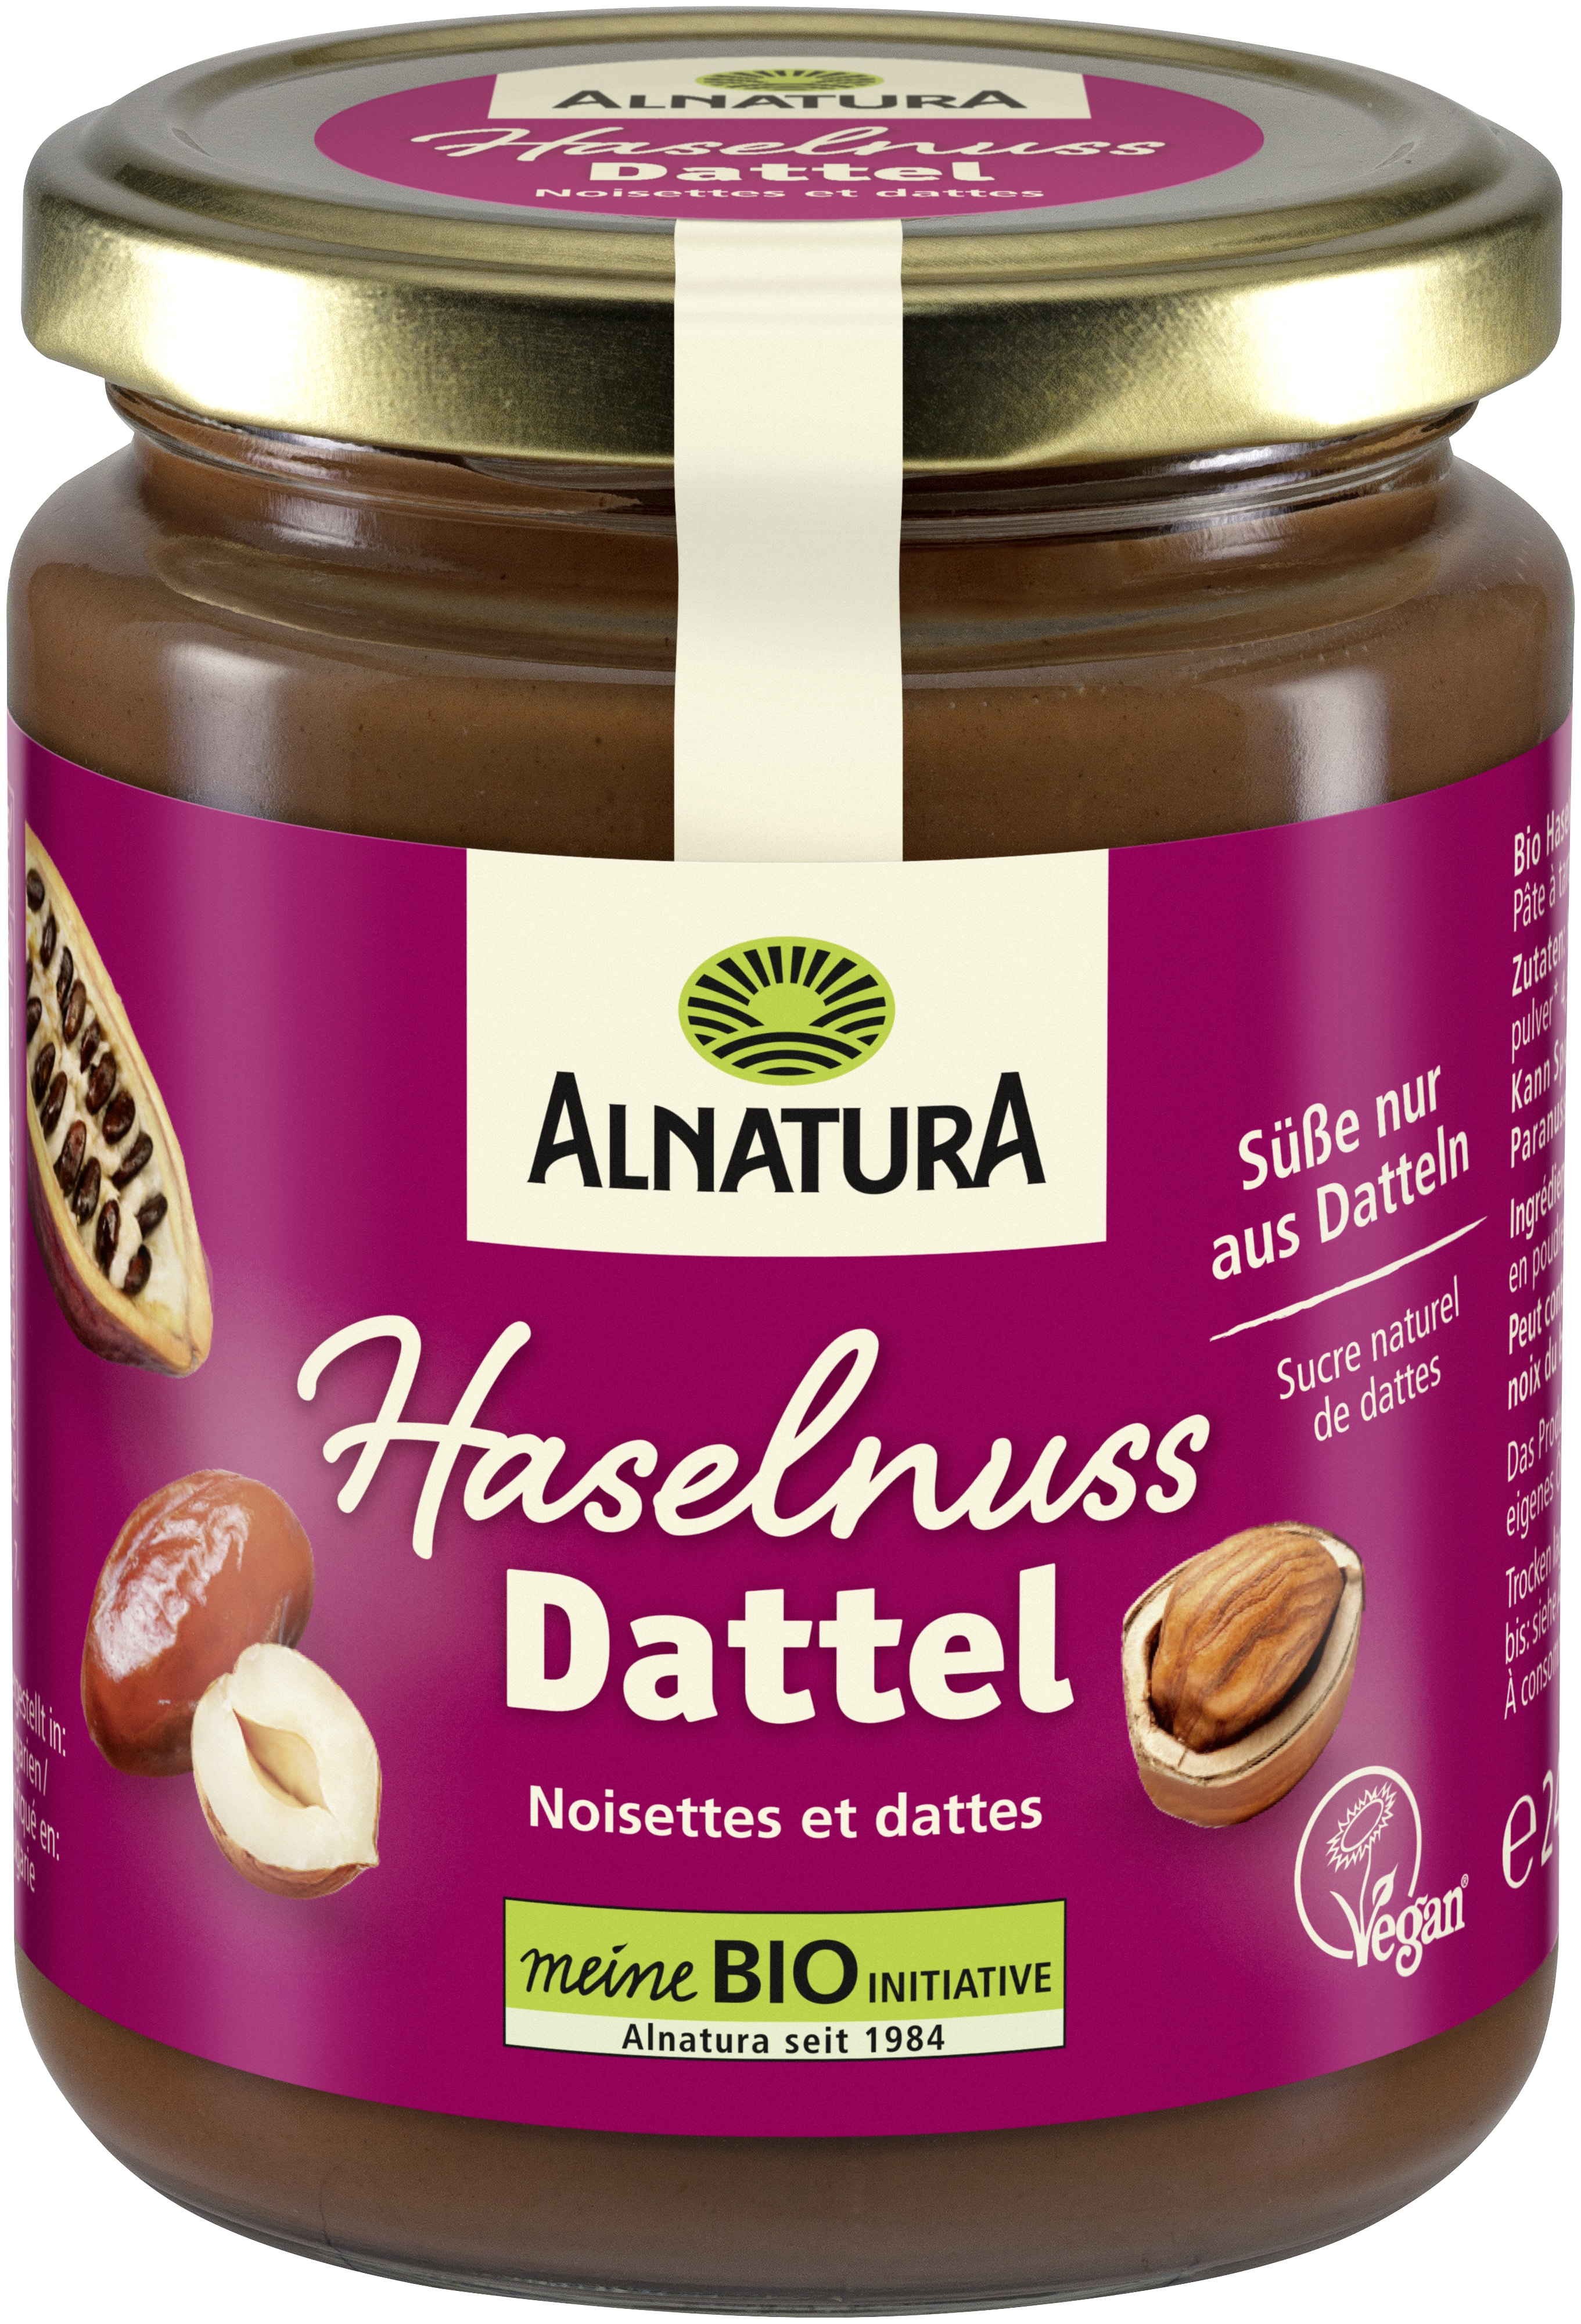 Haselnuss-Dattel-Creme (240 g) in Bio-Qualität von Alnatura